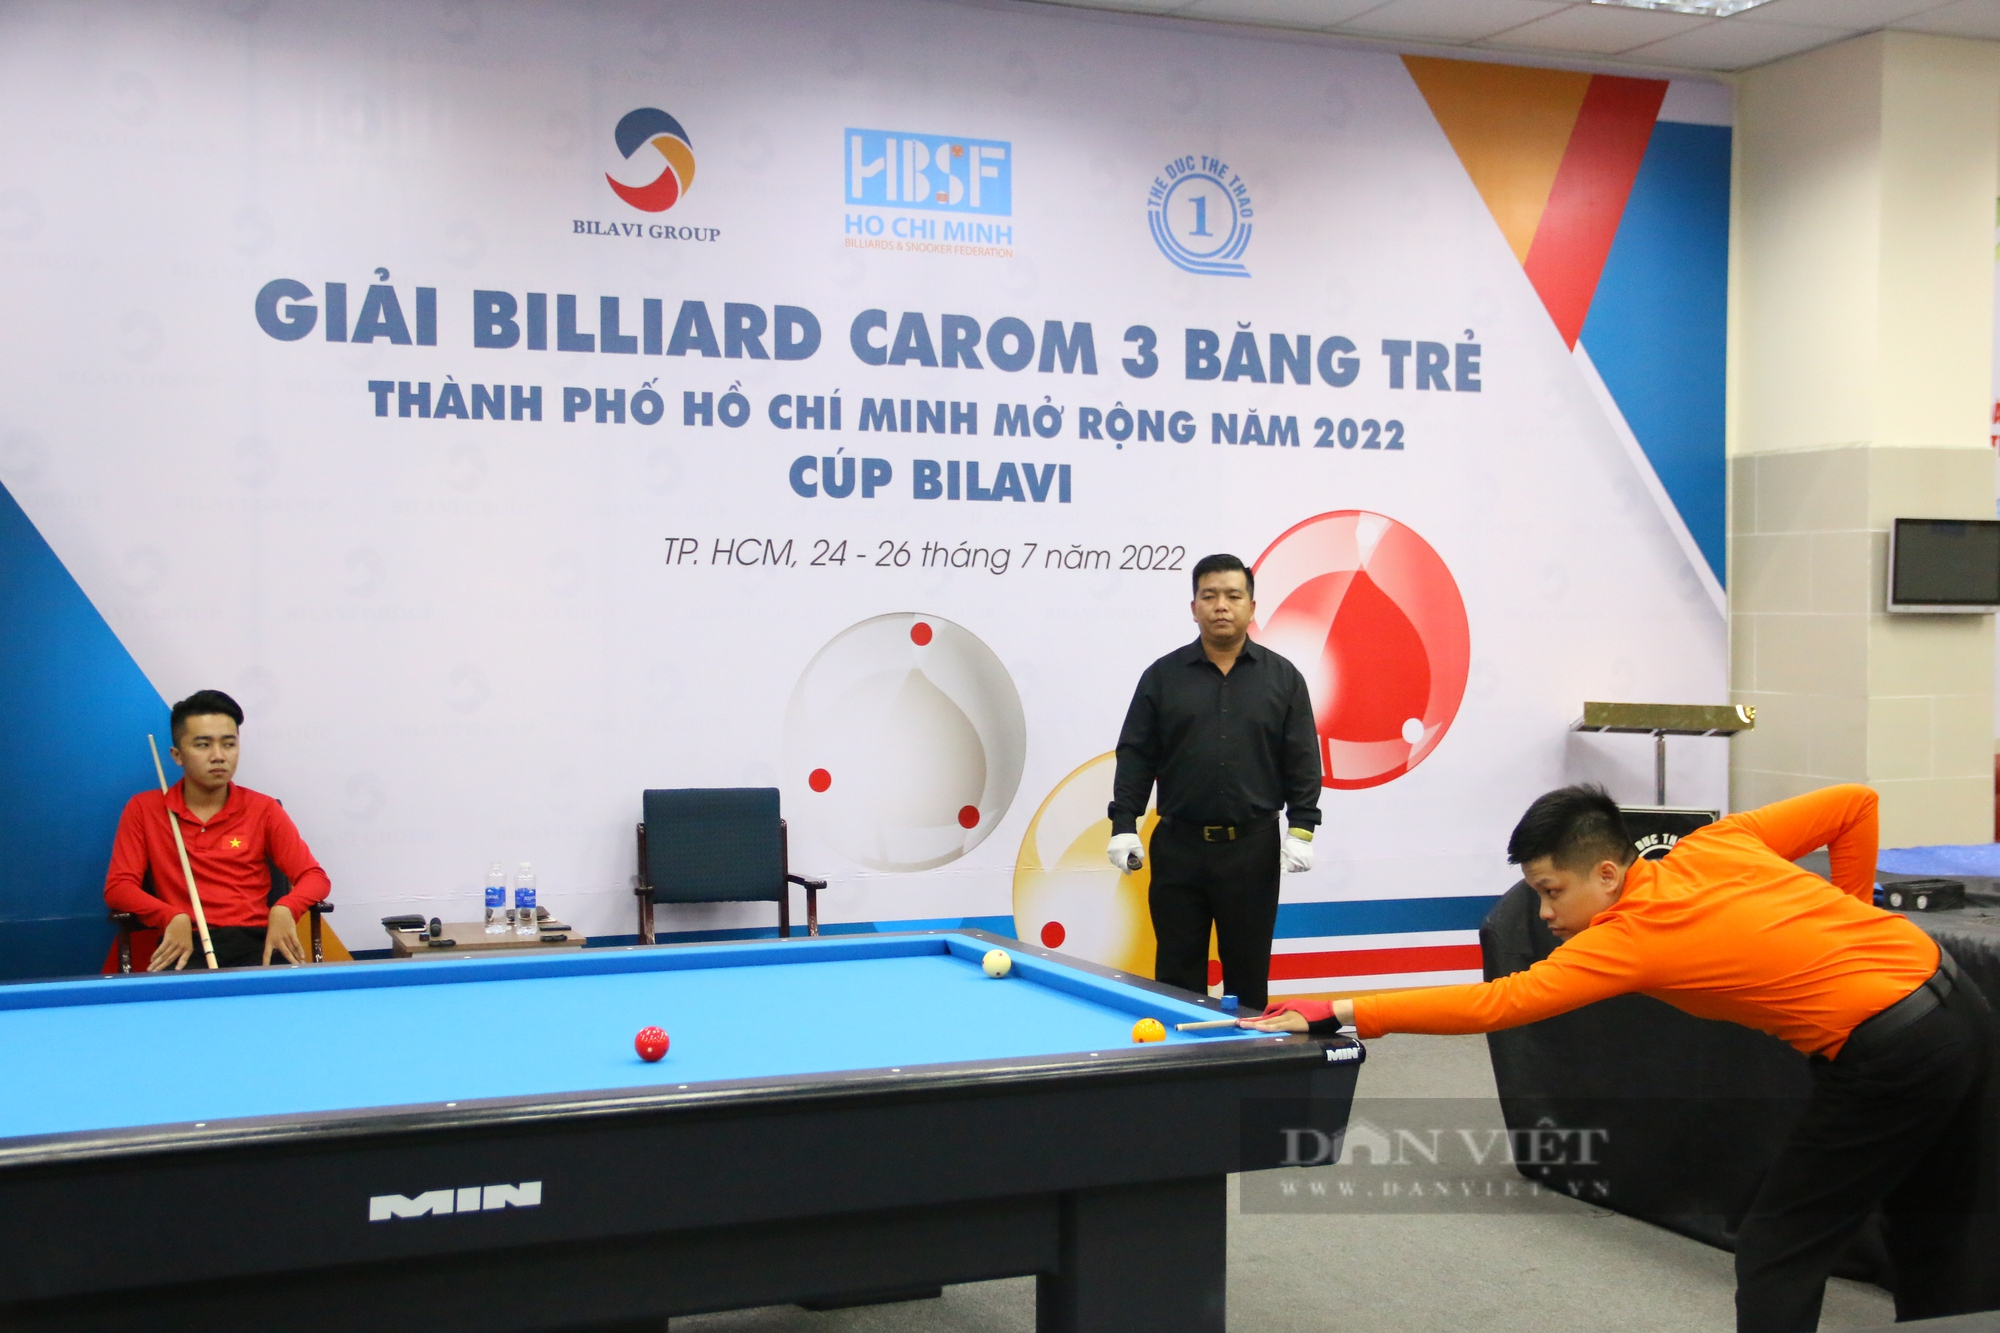 Lê Xuân Ân và Nguyễn Hoài Phong giành suất dự Giải Billiard Carom 3 băng trẻ thế giới - Ảnh 1.